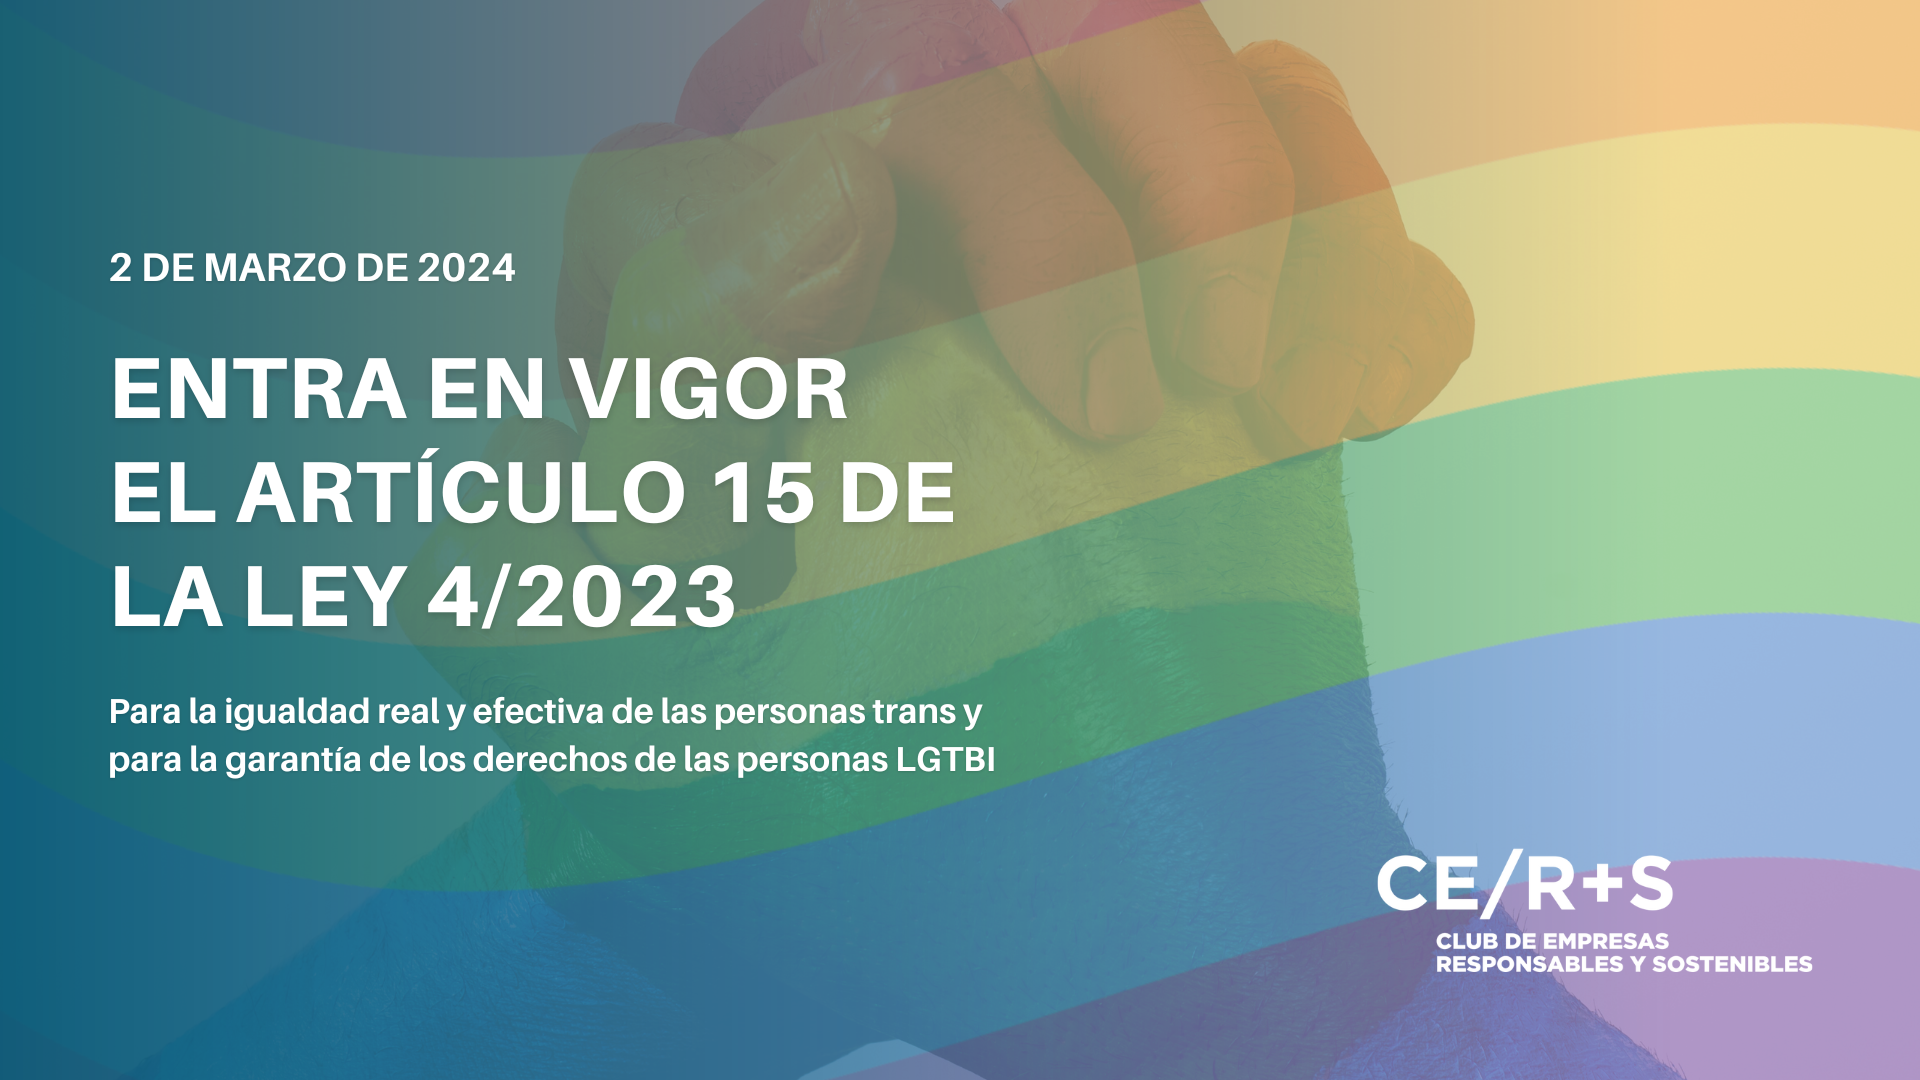 Entra en vigor el artículo 15 de la Ley 4/2023, para la igualdad real y efectiva de las personas trans y para la garantía de los derechos de las personas LGTBI